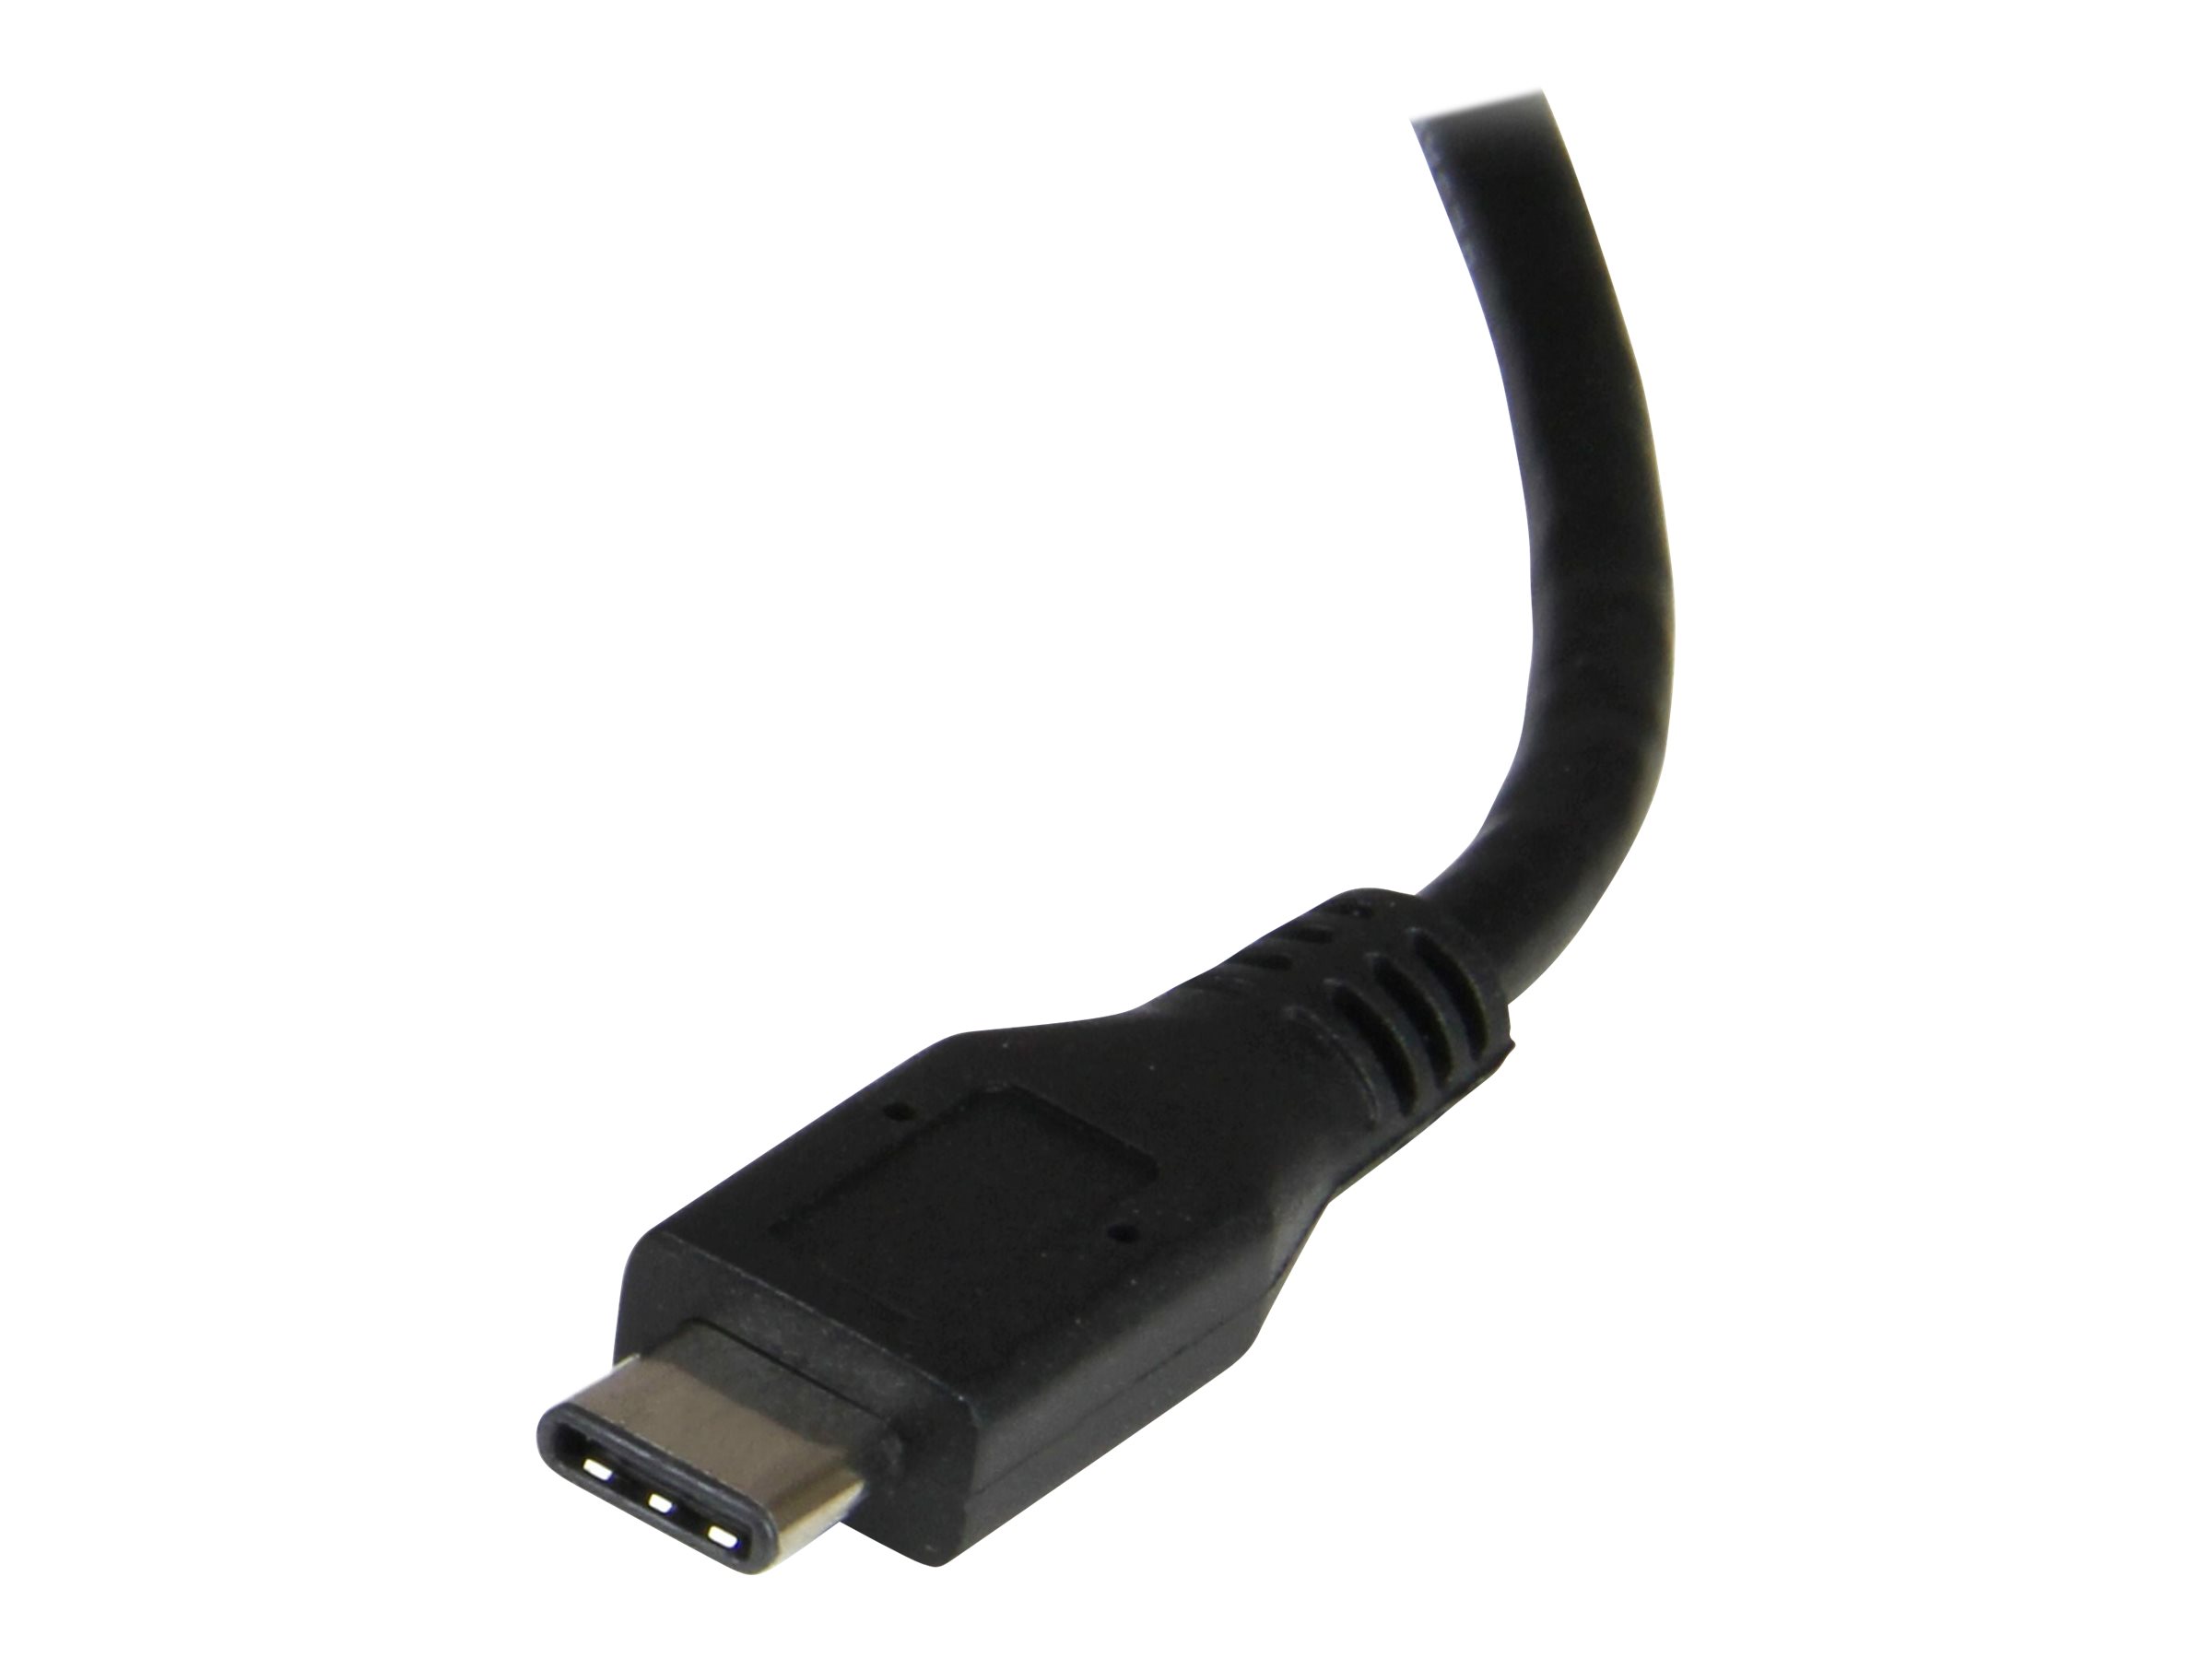 StarTech.com Adaptateur réseau USB-C vers 2 ports Gigabit Ethernet avec port USB 3.0 (Type-A) (US1GC301AU2R) - Adaptateur réseau - USB-C - Gigabit Ethernet x 2 + USB 3.0 - pour P/N: TB33A1C - US1GC301AU2R - Cartes réseau